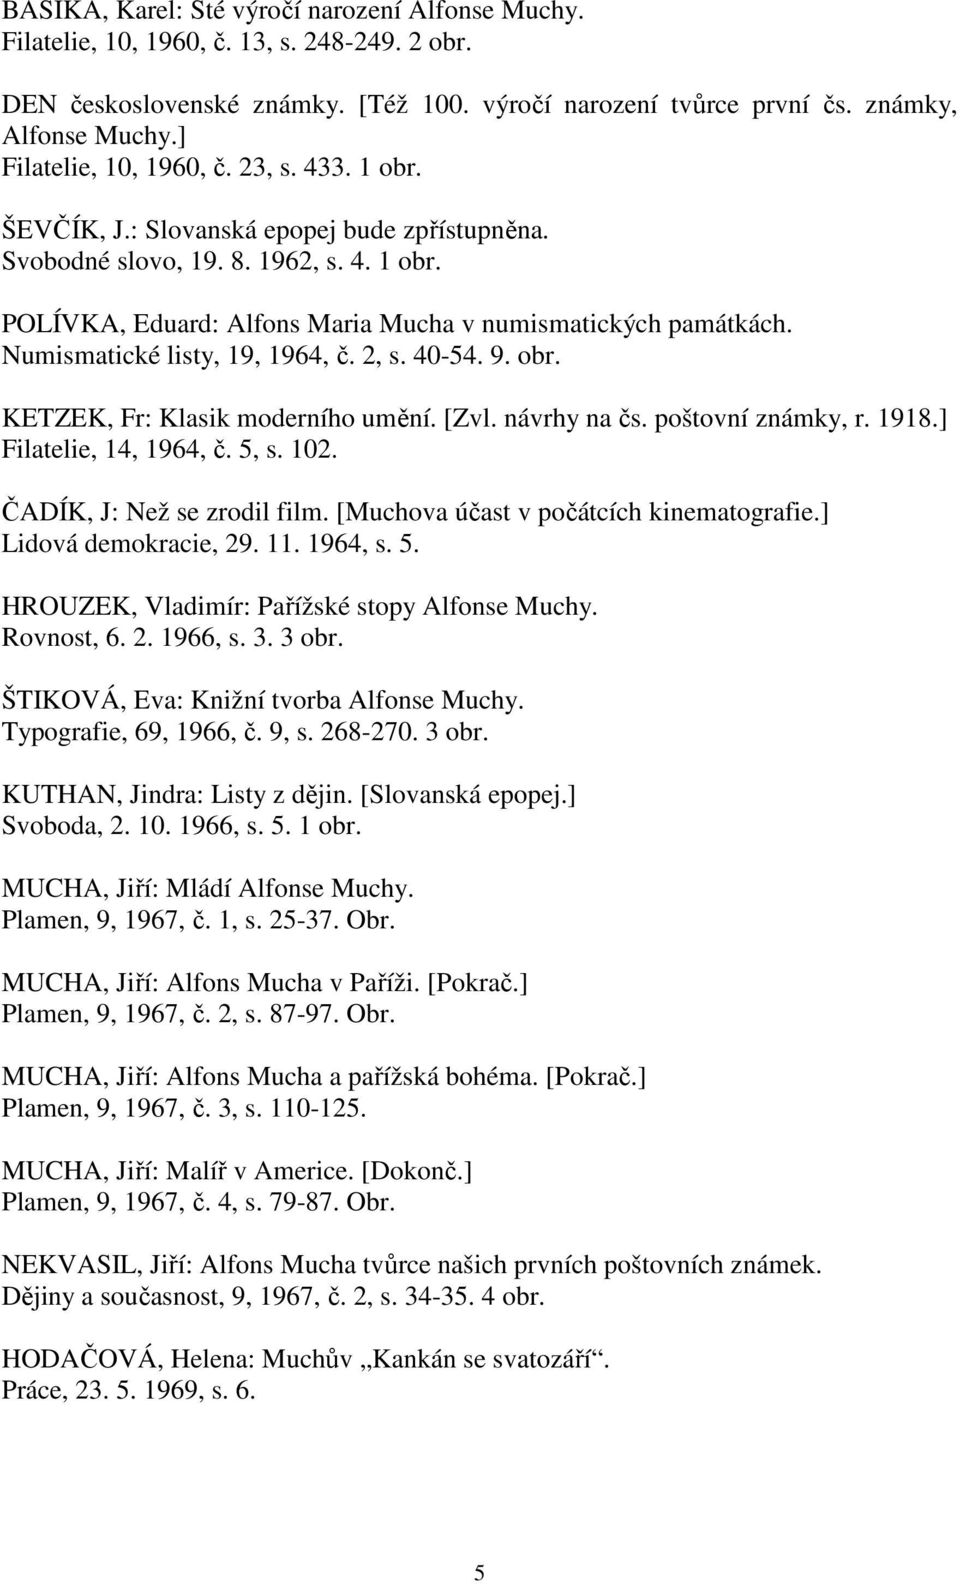 Numismatické listy, 19, 1964, č. 2, s. 40-54. 9. obr. KETZEK, Fr: Klasik moderního umění. [Zvl. návrhy na čs. poštovní známky, r. 1918.] Filatelie, 14, 1964, č. 5, s. 102.